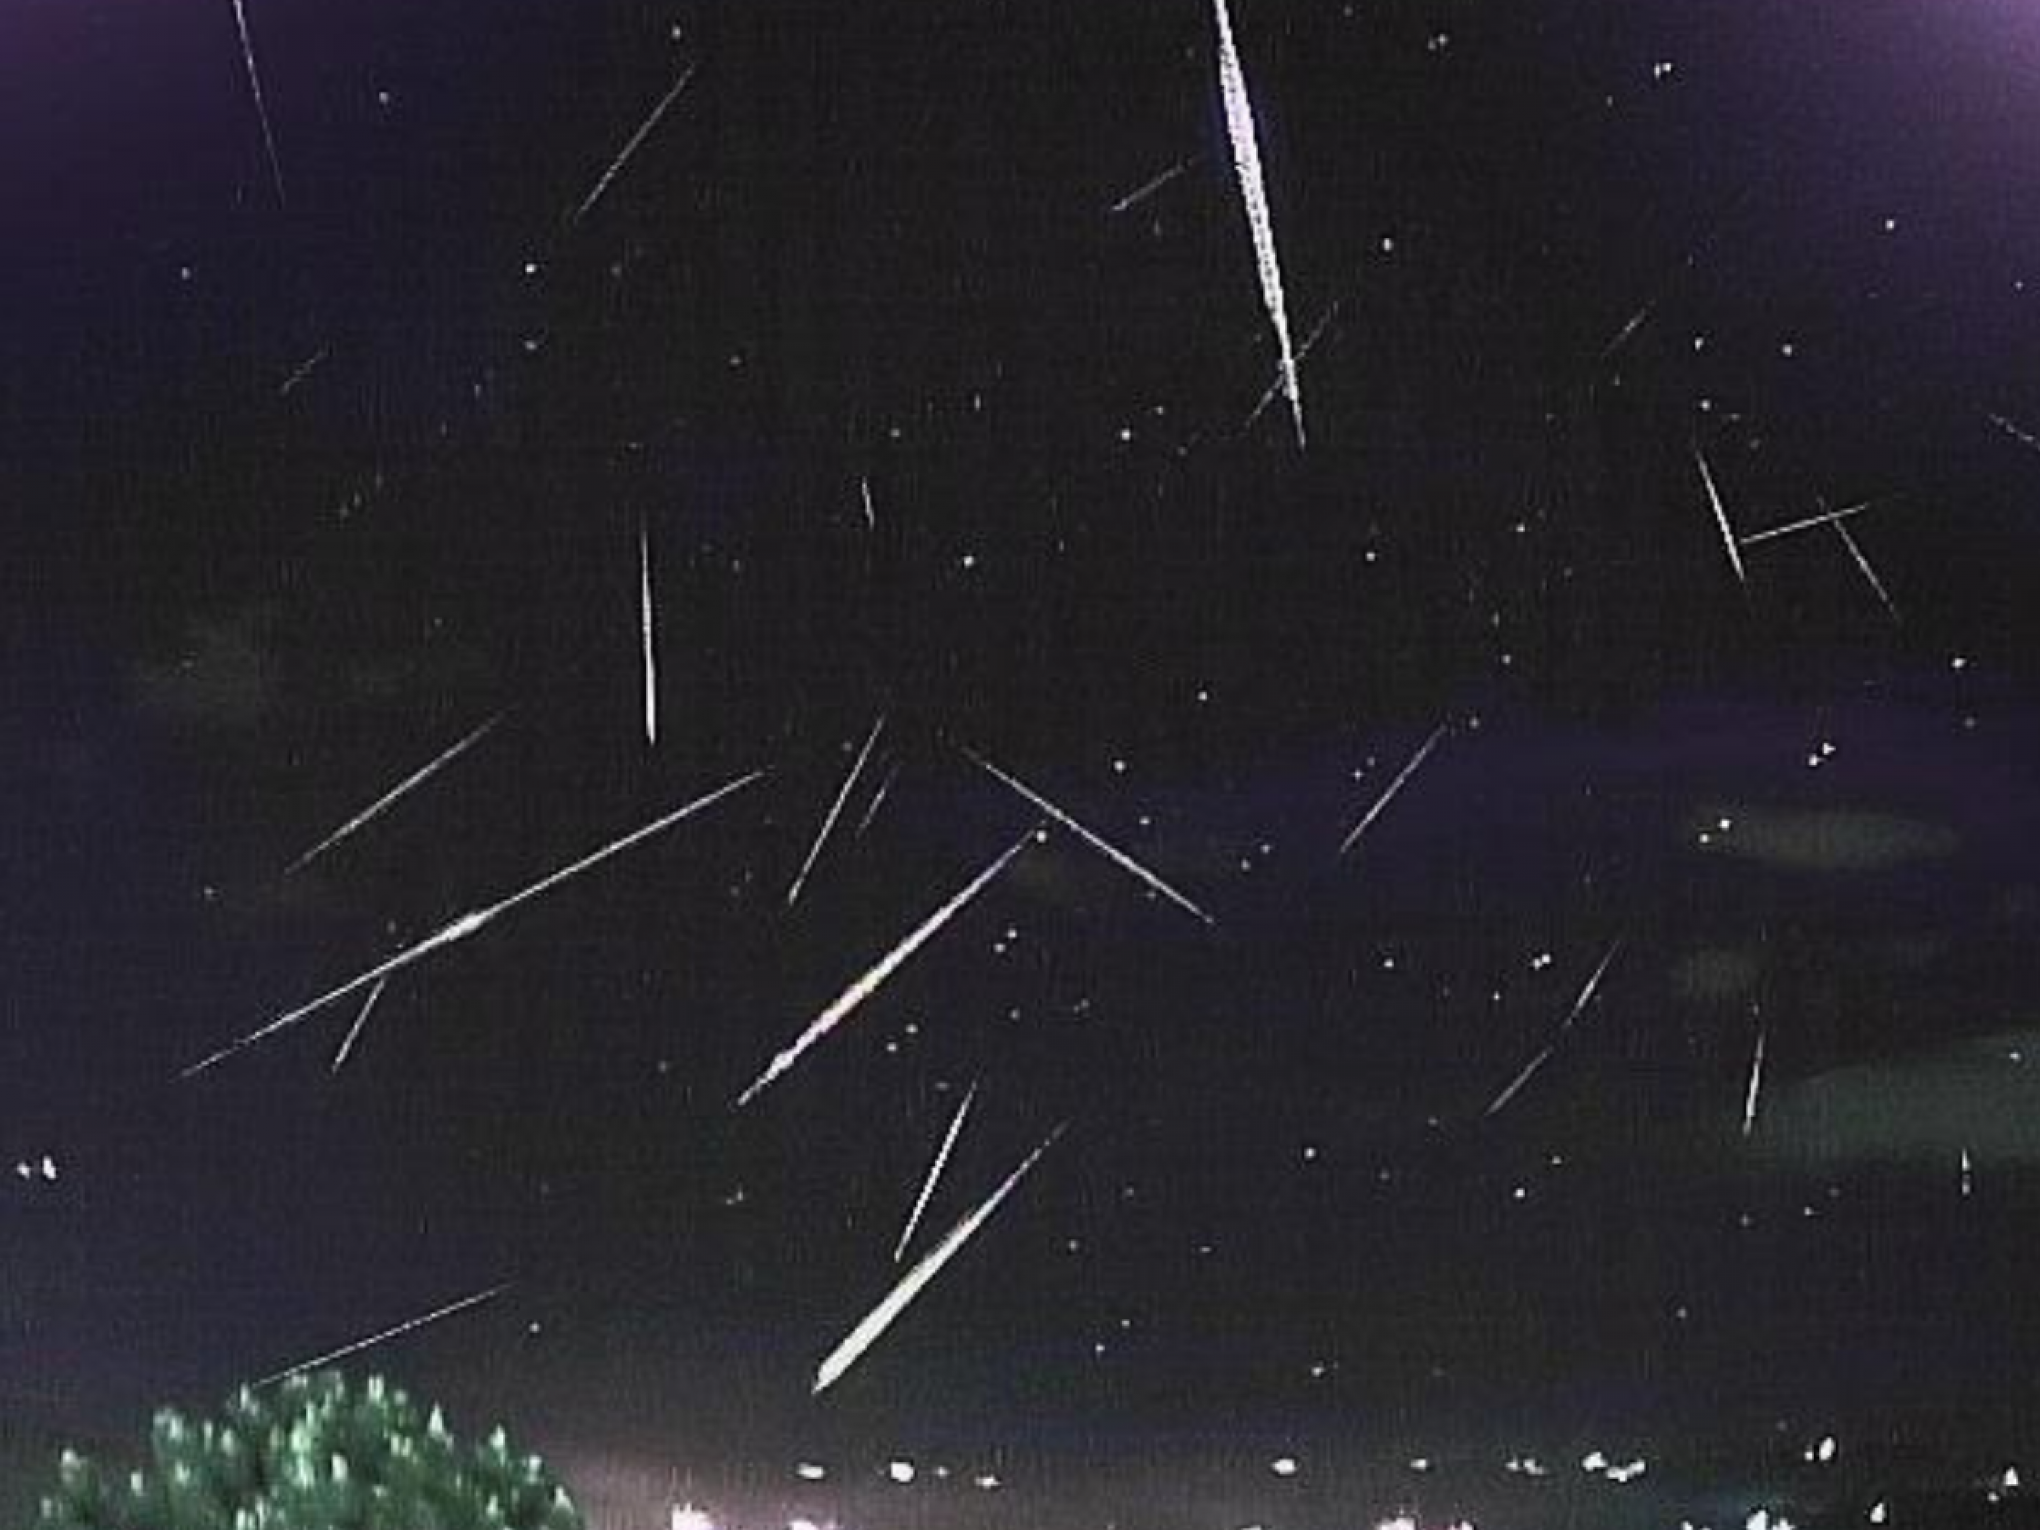 Chuva de meteoros promete espetáculo no céu neste sábado; saiba como observar